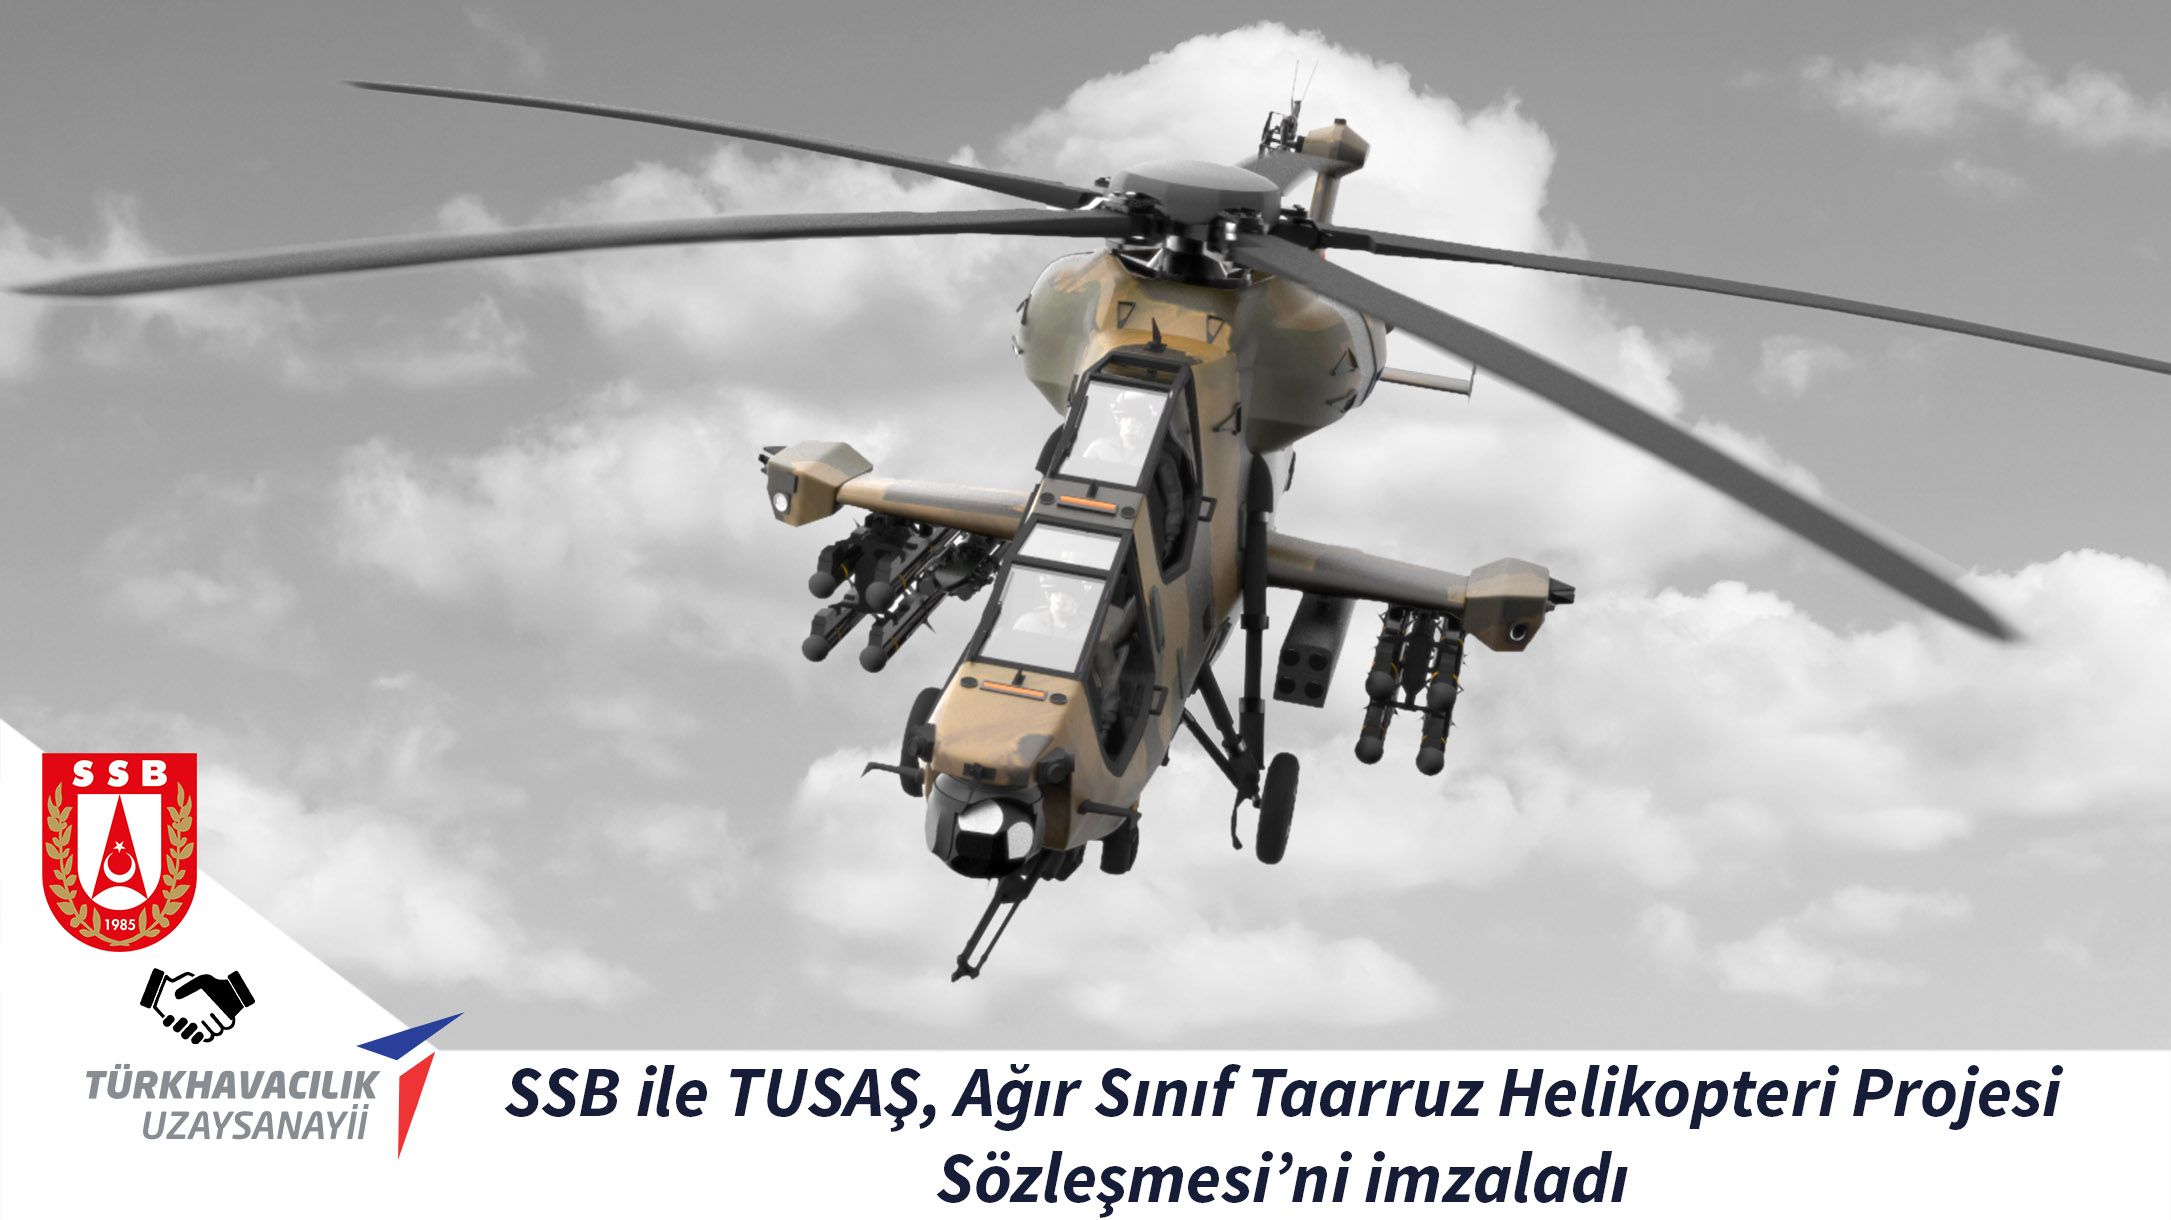 SSB ile TUSAŞ, Ağır Sınıf Taarruz Helikopteri Projesi Sözleşmesi’ni imzaladı